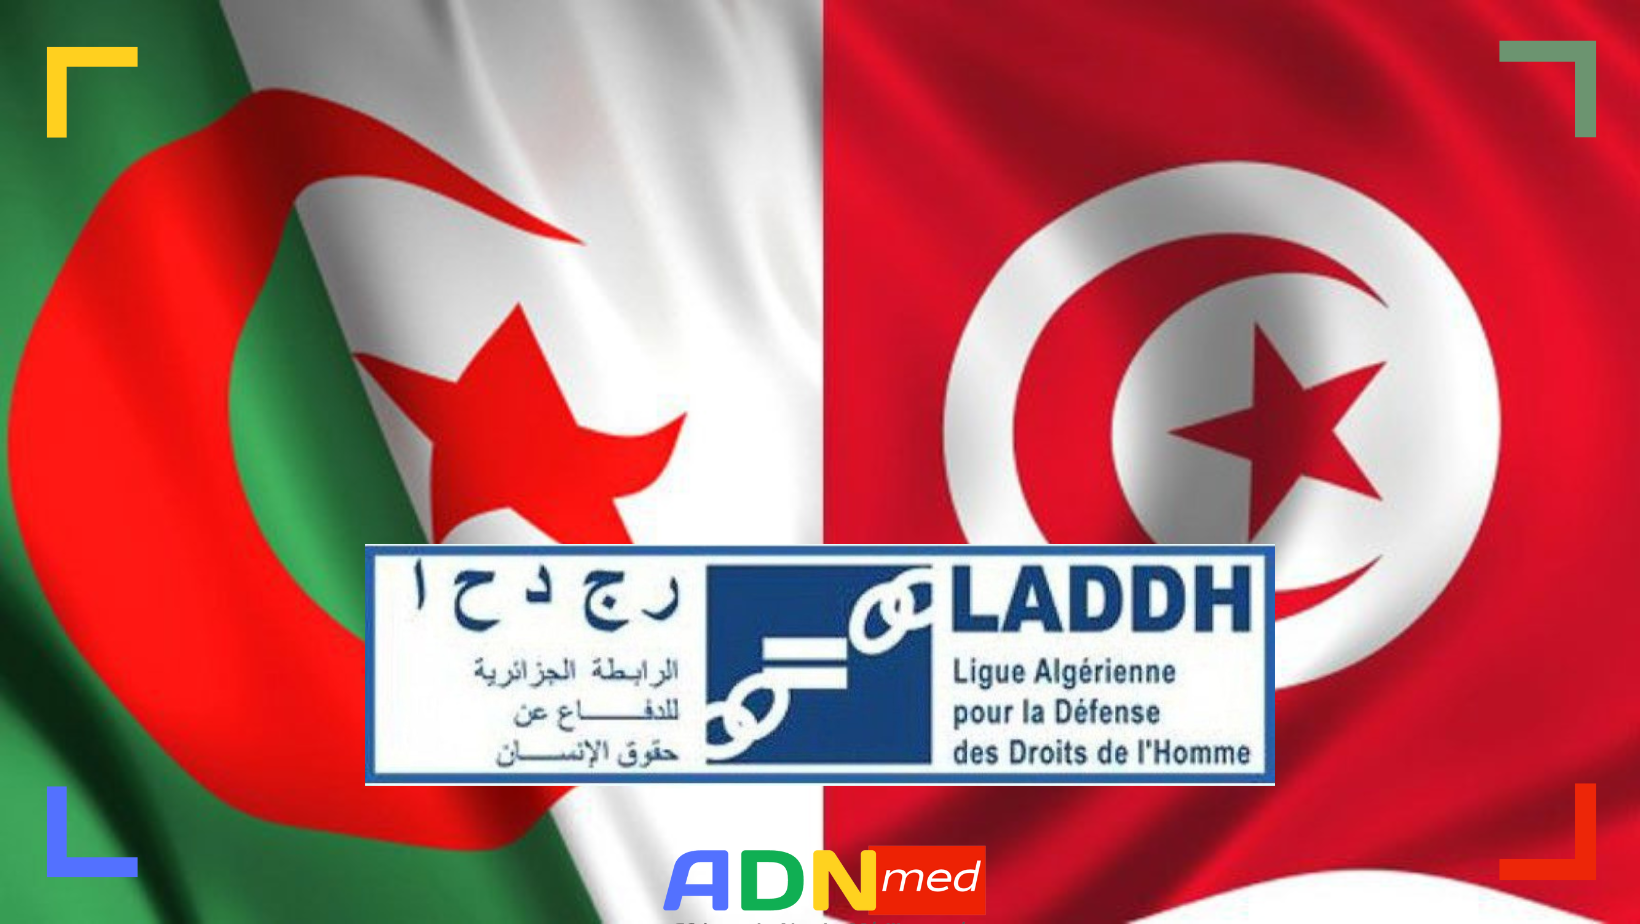 26 ASSOCIATIONS TUNISIENNES SOLIDAIRES DE LA LADDH